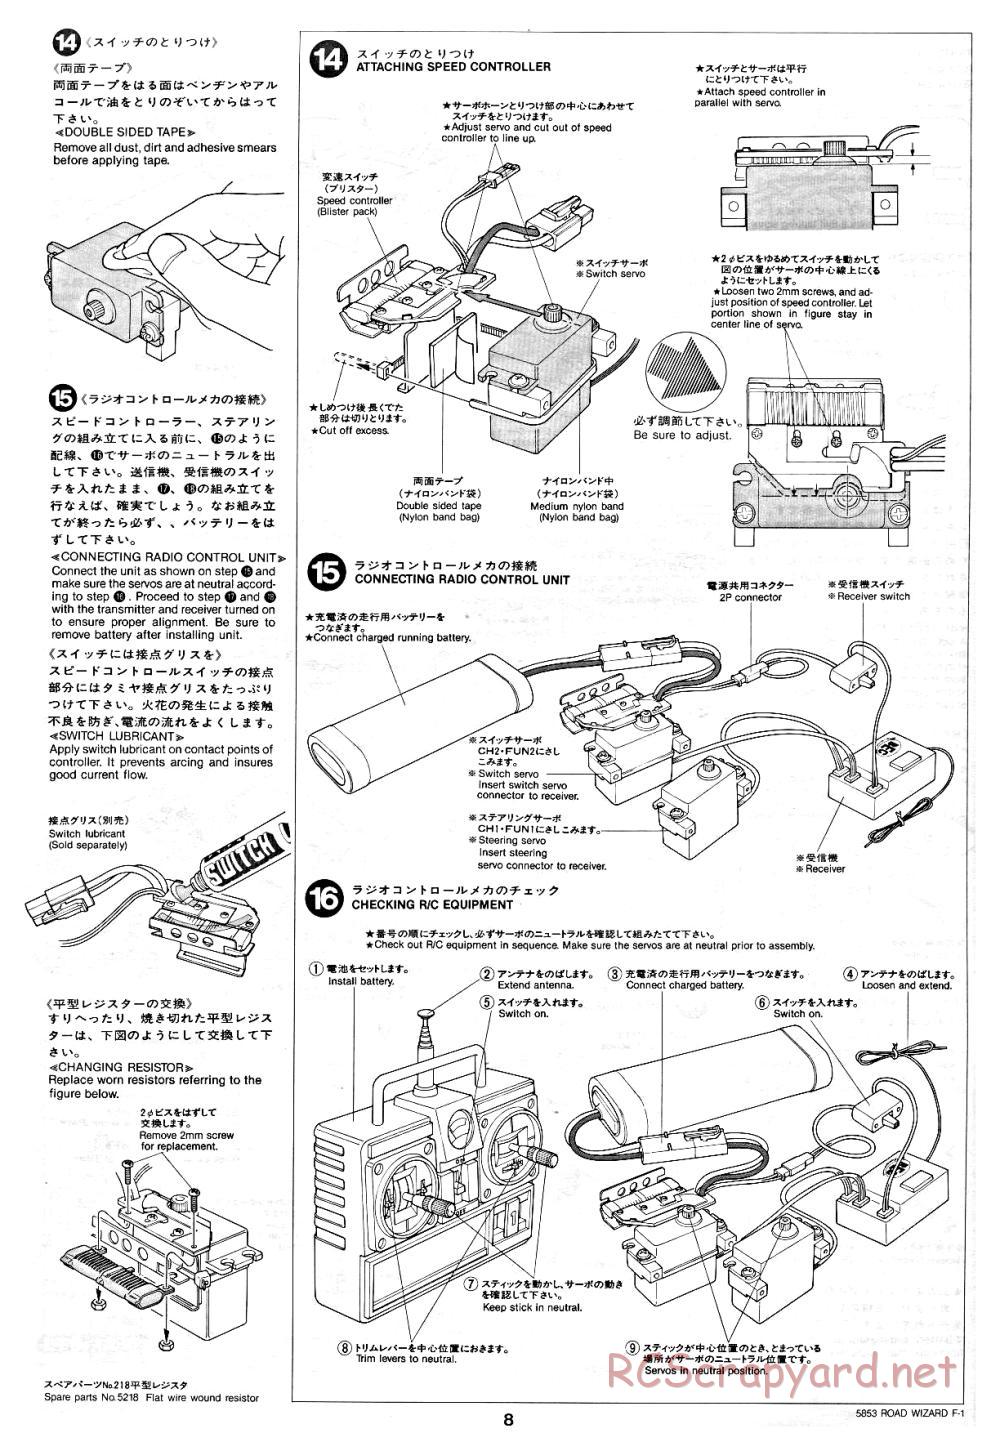 Tamiya - Road Wizard F-1 - 58053 - Manual - Page 8